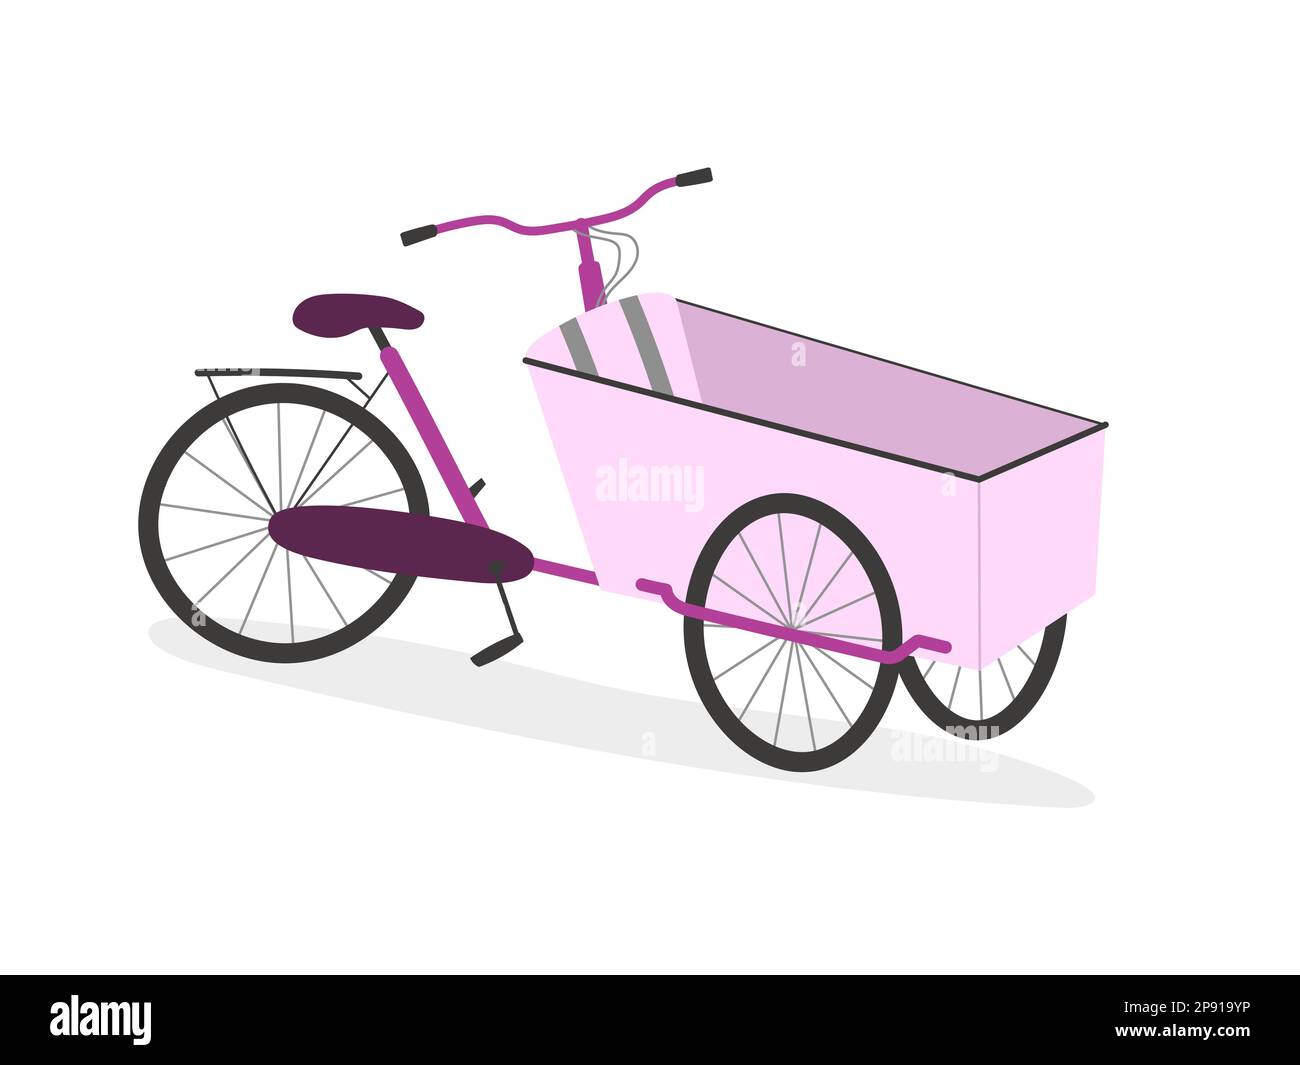 Eltern-Cargo-Bike mit drei Rädern, Boxenfahrrad. Pinkfarbener Cartoon realistische Backwaren auf weißem Hintergrund. Stock Vektor